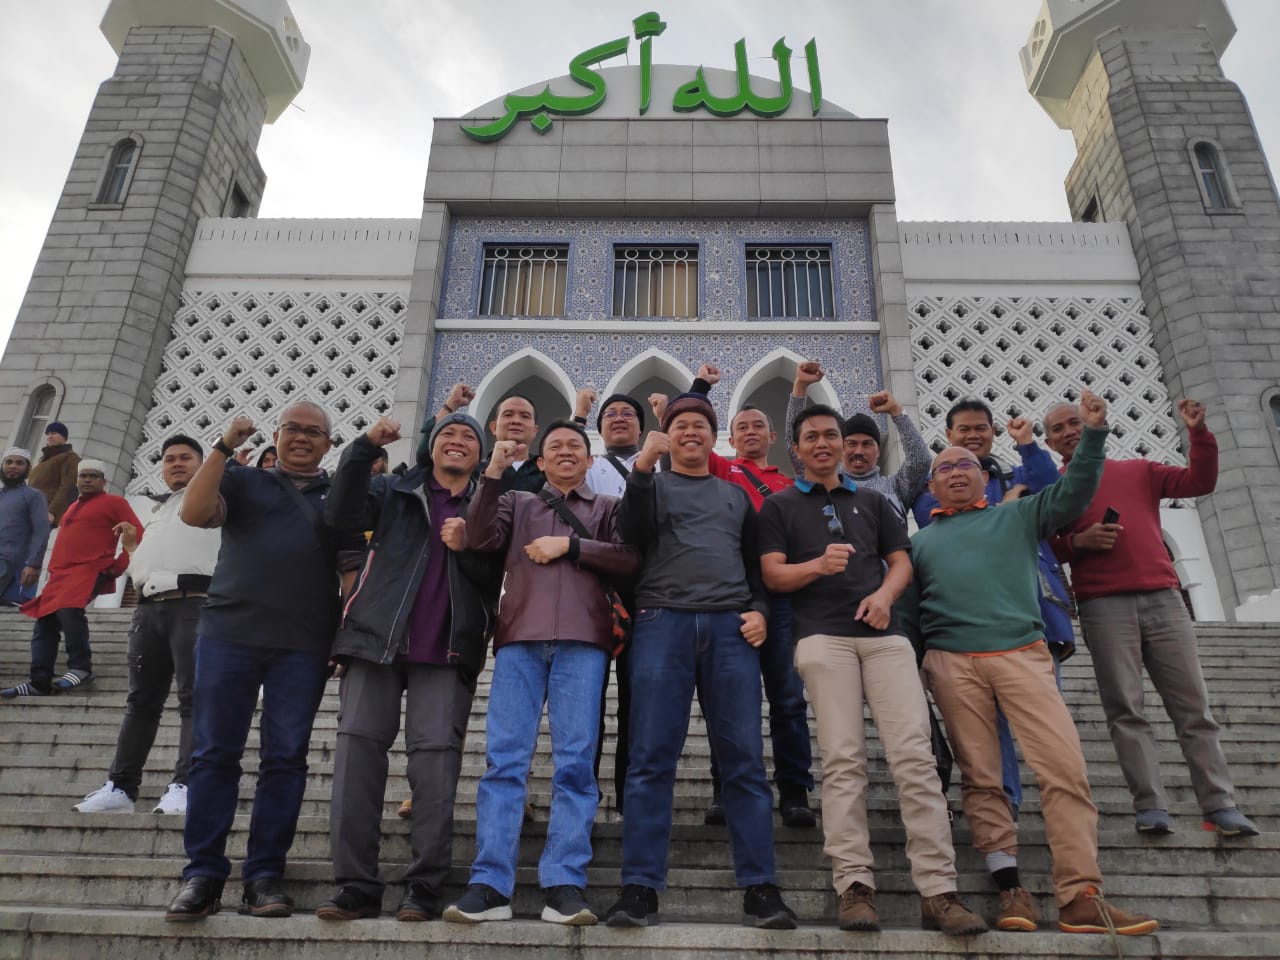 Delapan Masjid Atau Mushola Yang Dapat Dikunjungi Waktu Liburan ke Korea Selatan